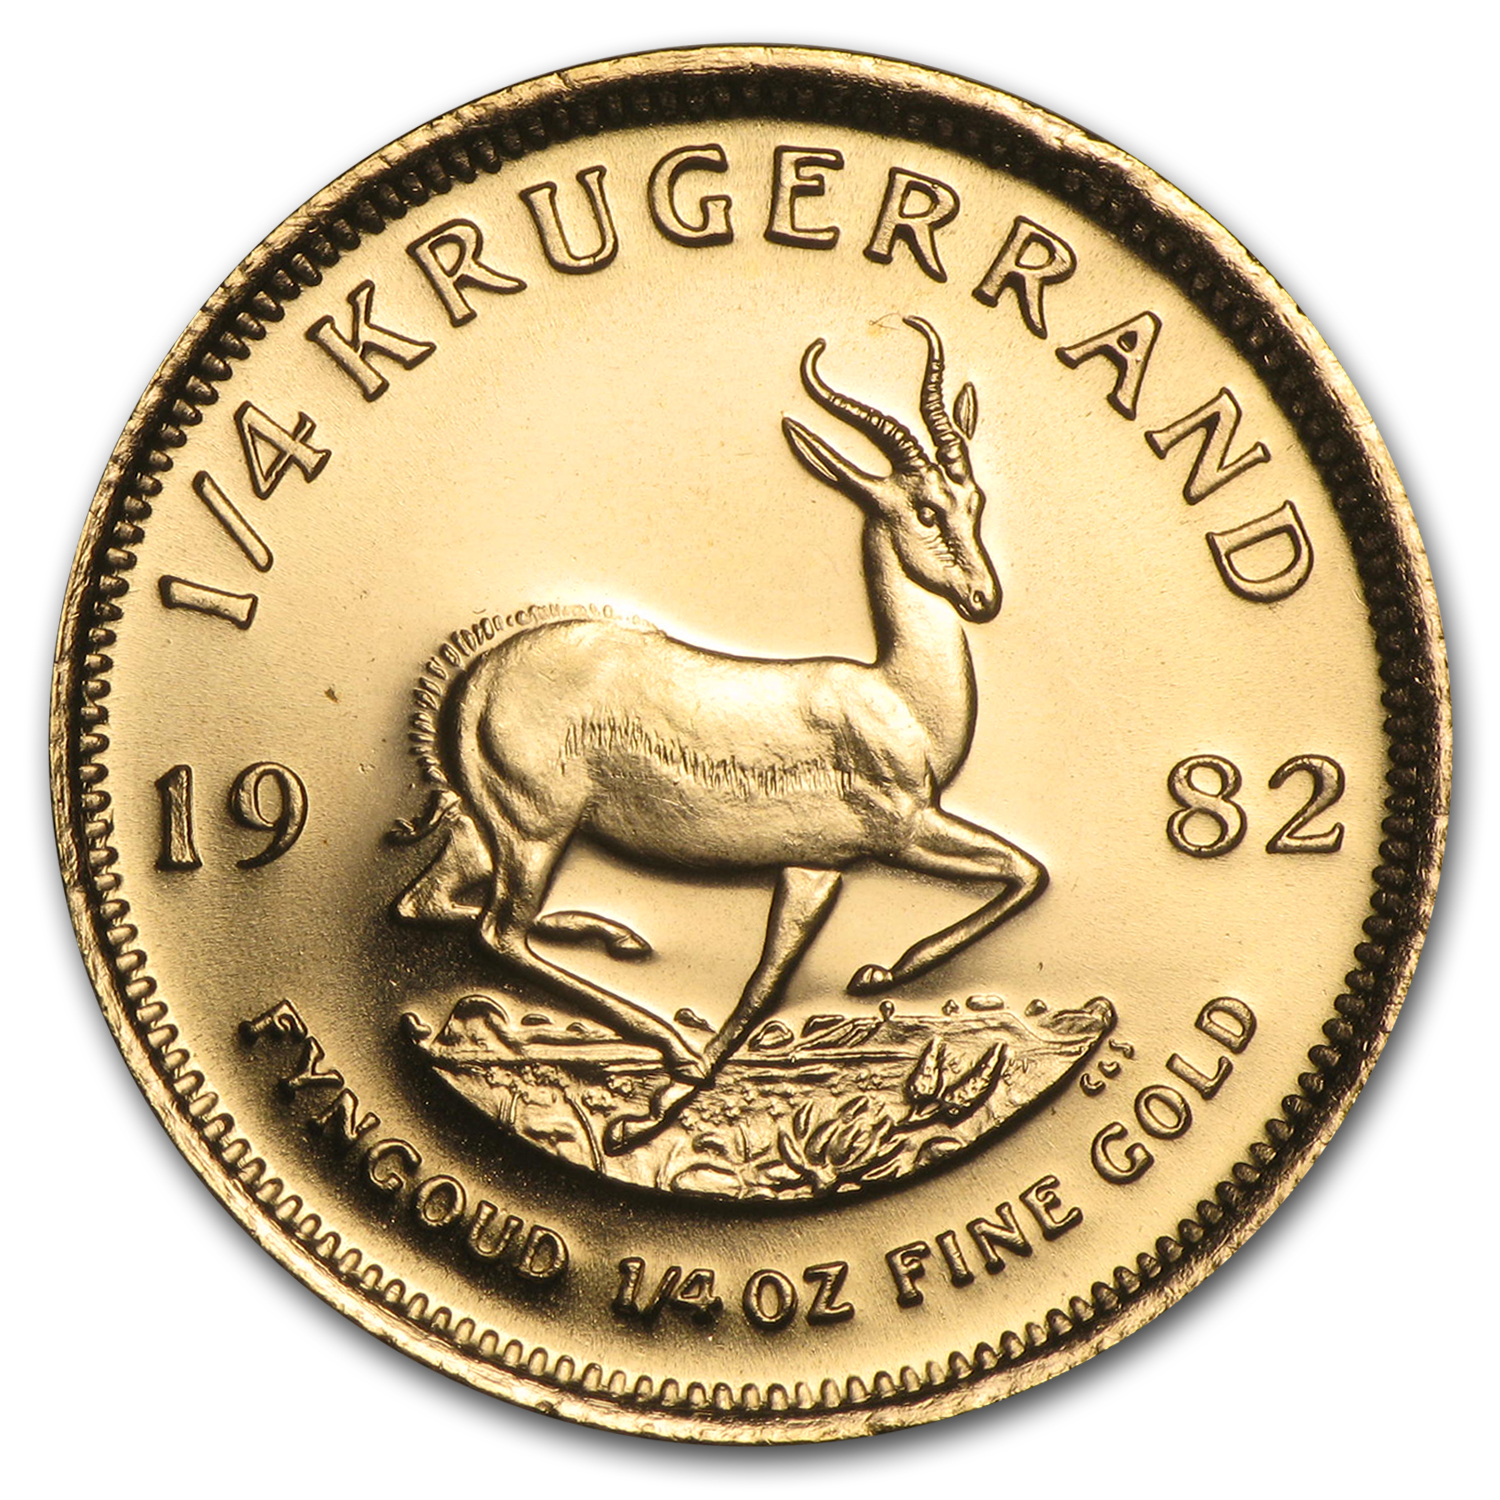 Buy 1982 South Africa 1/4 oz Gold Krugerrand